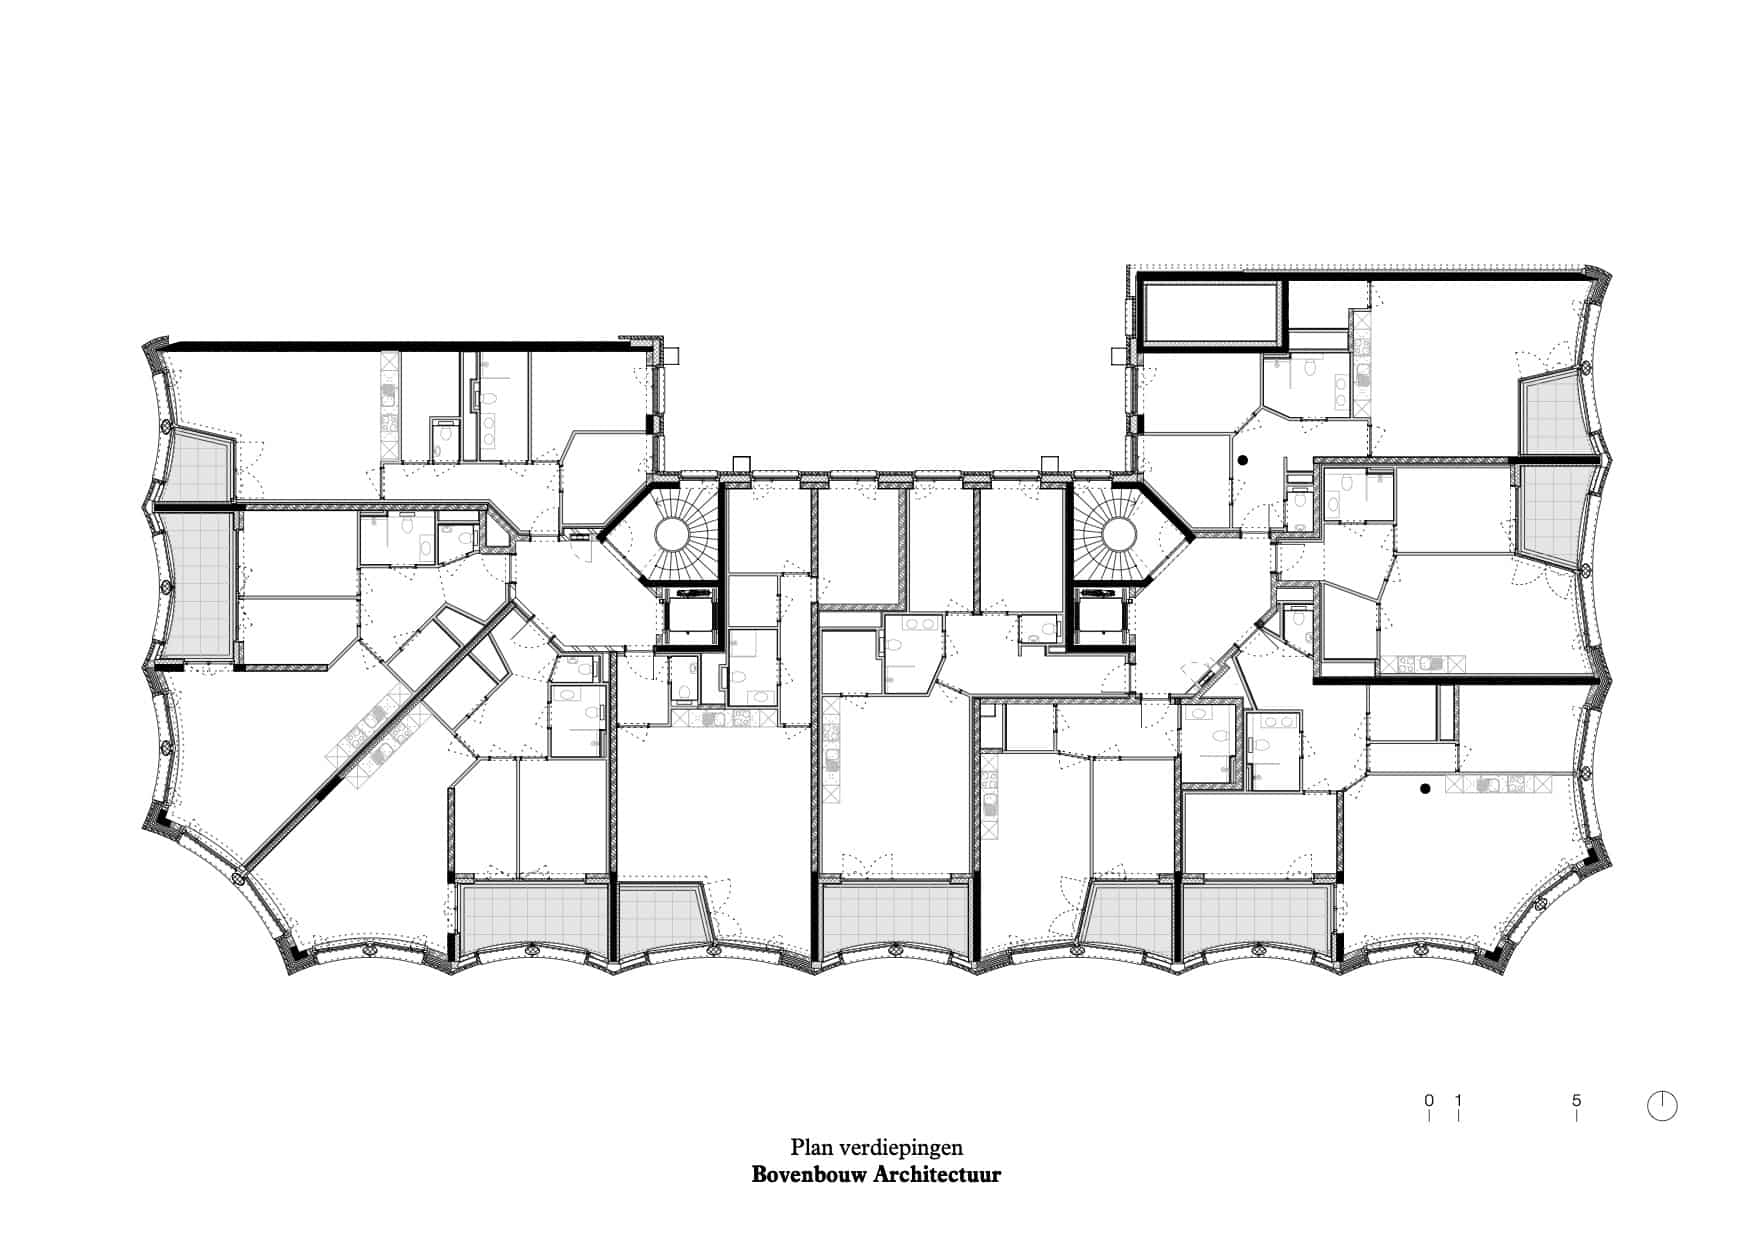 Grundriss Erstes Obergeschoss, Zeichnung: Bovenbouw Architectuur